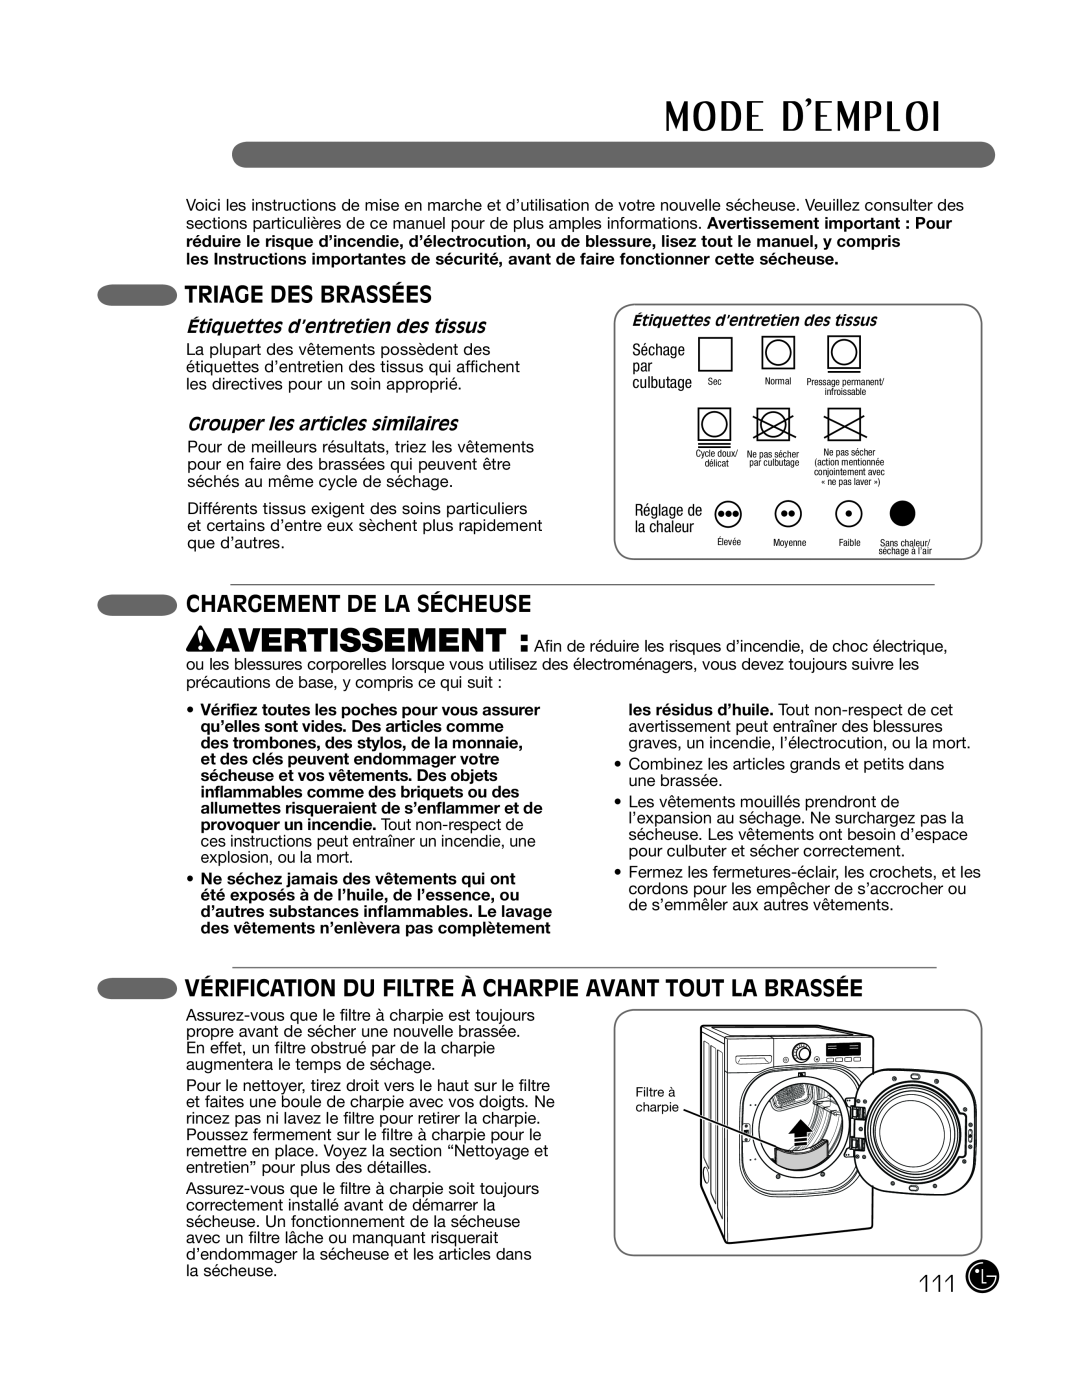 LG Electronics P154 Triage Des Brassées, Chargement de la sécheuse, Vérification Du Filtre À Charpie Avant Tout La Brassée 